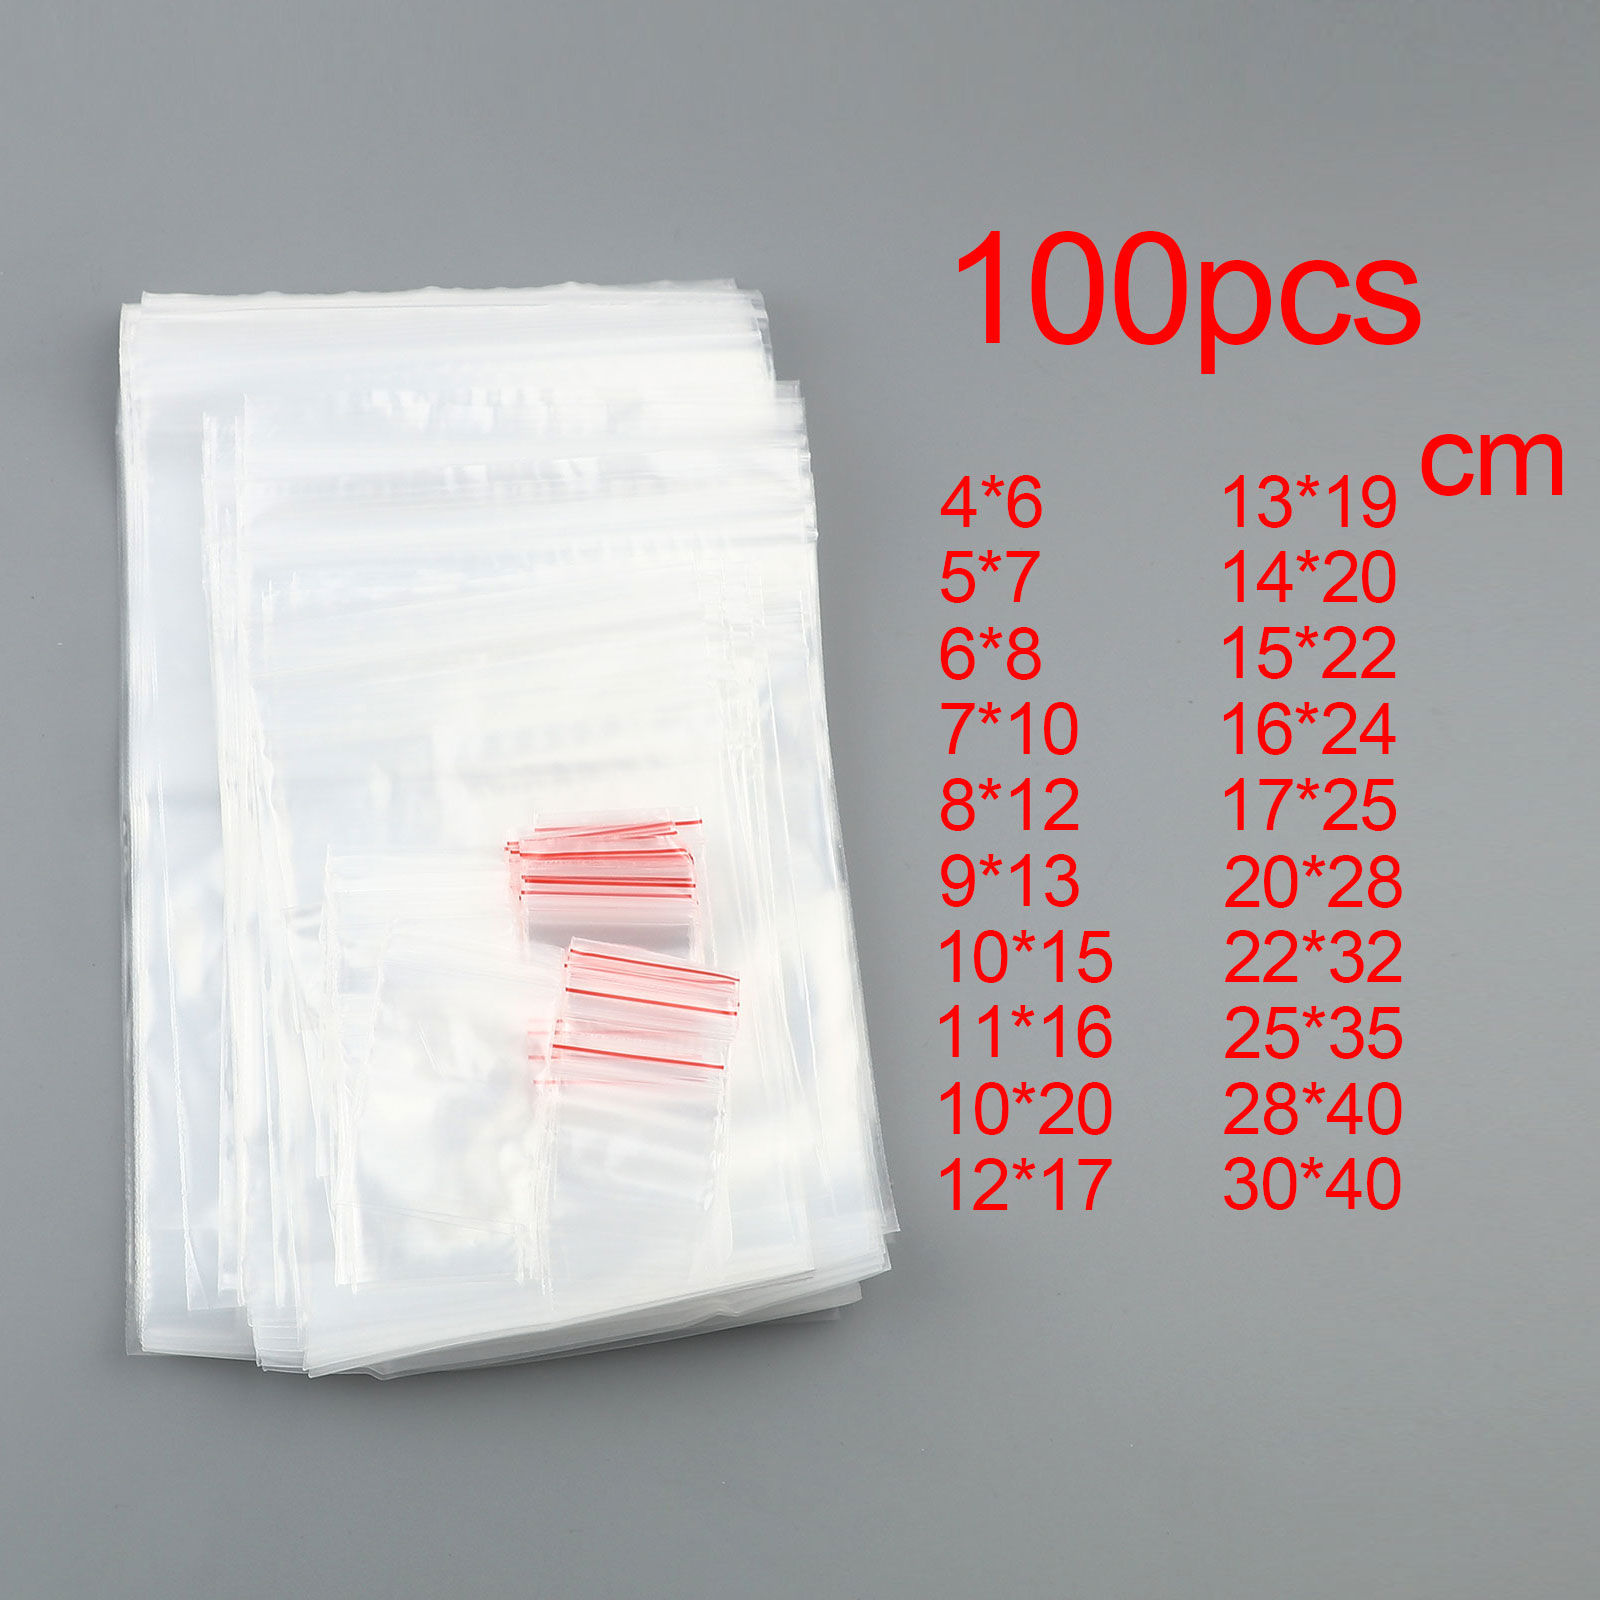 Bild von Poly Ethylen Griff Dichtung Zip Lock Taschen Rechteck Transparent klar 100 PCs